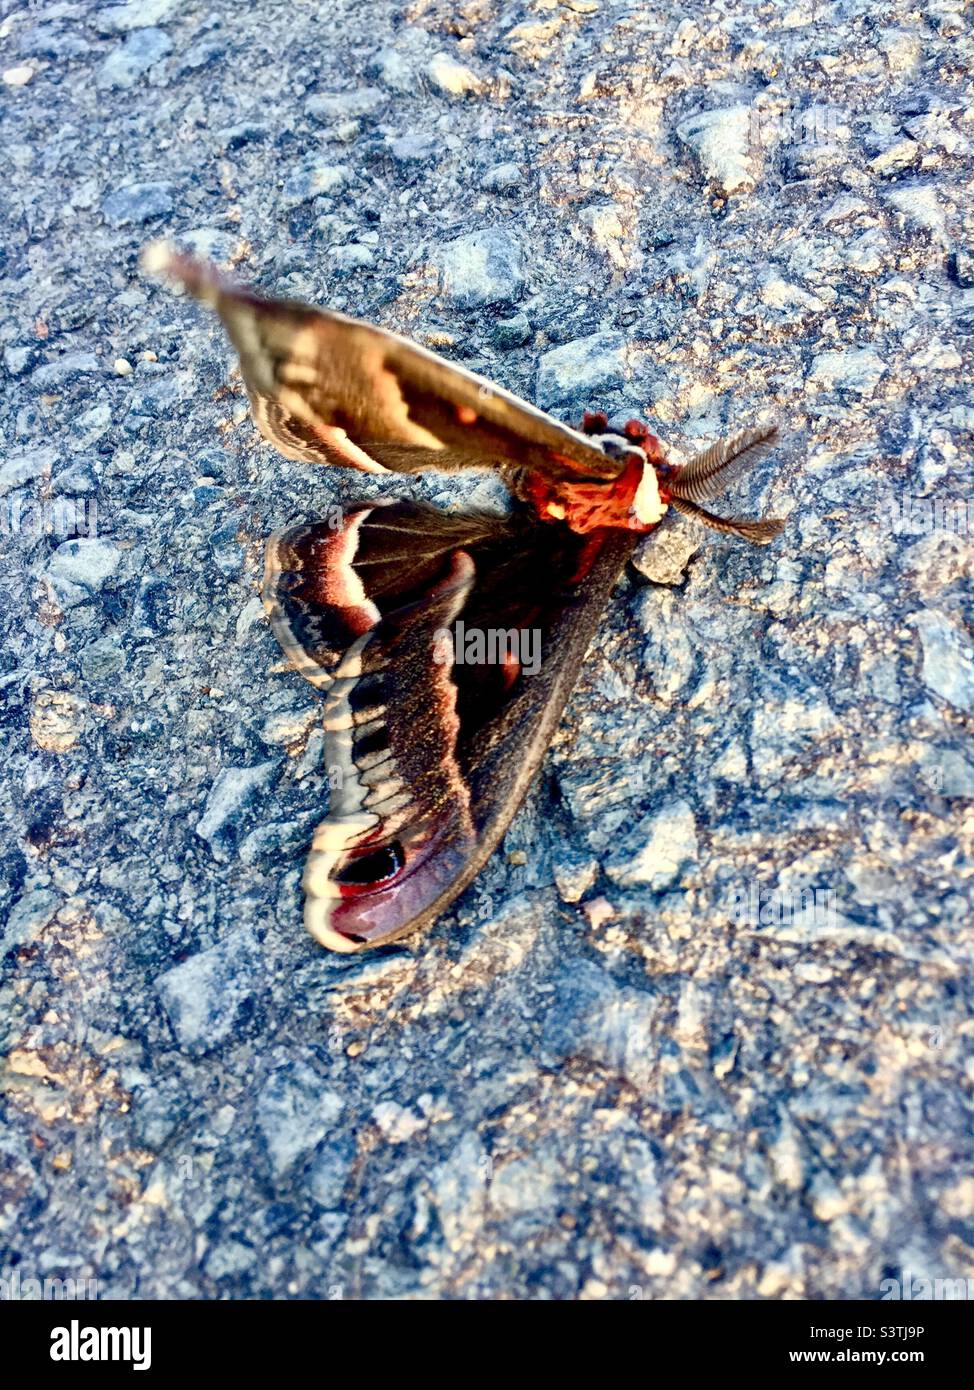 Un papillon avec une aile brisée sur la route, Halifax, Canada. Beauté entravée. Flottement. Il reste encore de la vie. Dernier gaz. Banque D'Images